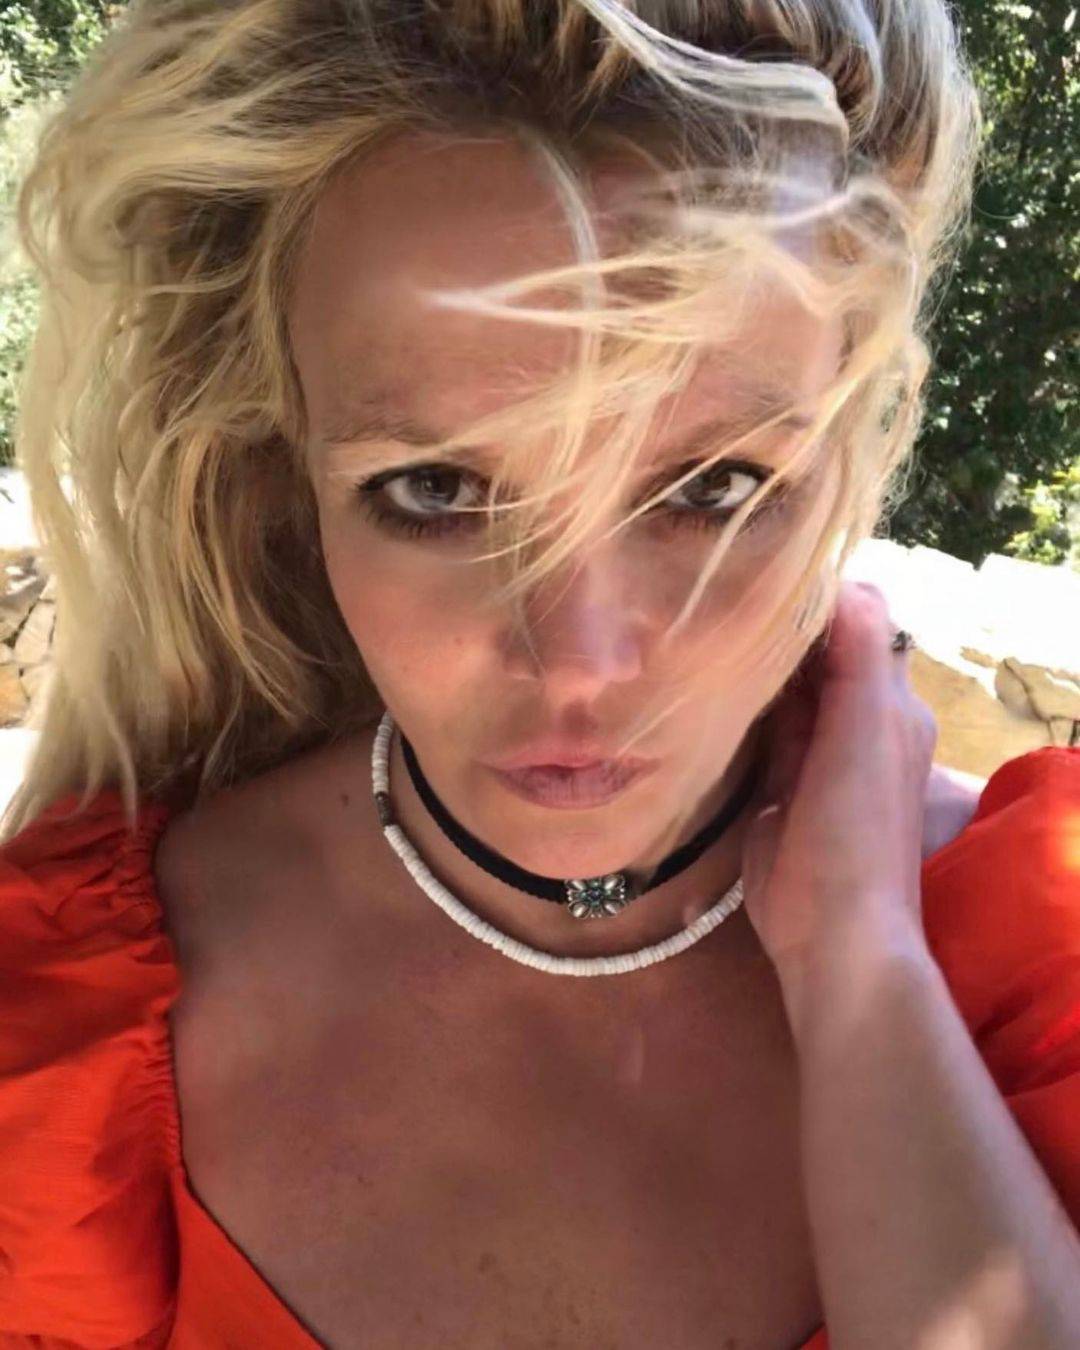 Nakon optužbi bivšeg supruga, Britney Spears opet zaplesala u provokativnom izdanju: 'Vatra'